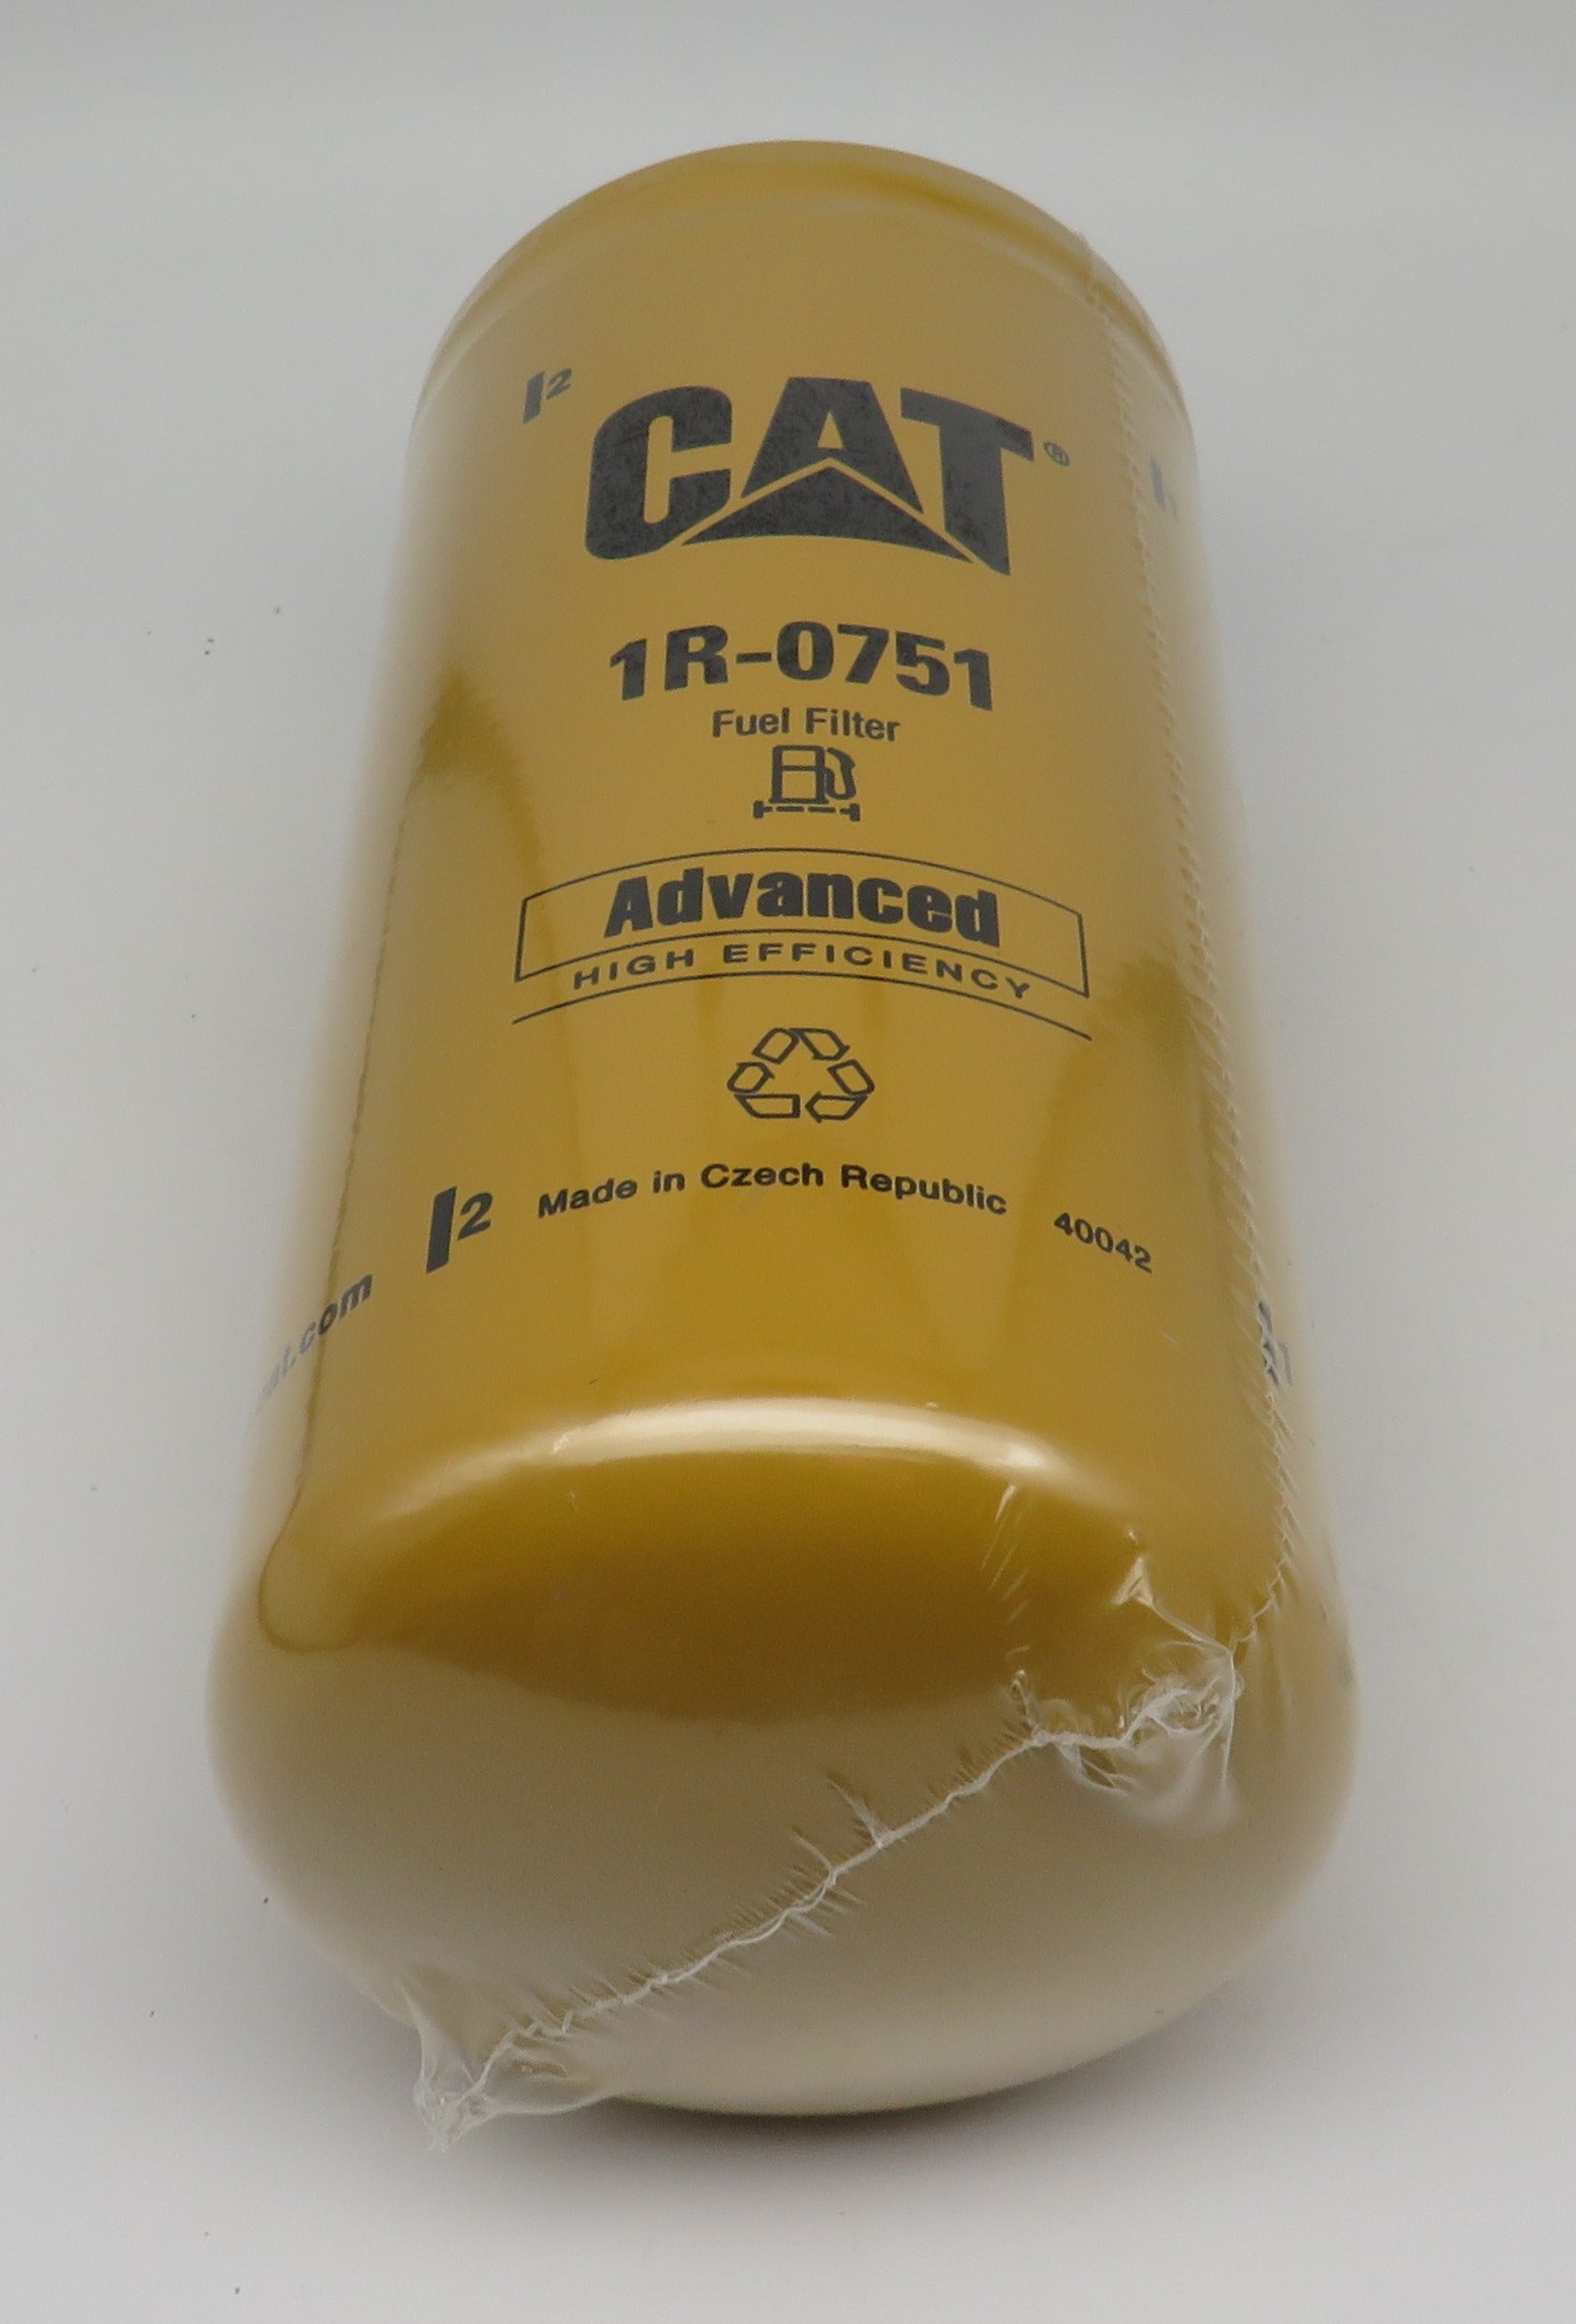 1R-0751 Caterpillar CAT Fuel Filter – Ess-Kay Yards Marina